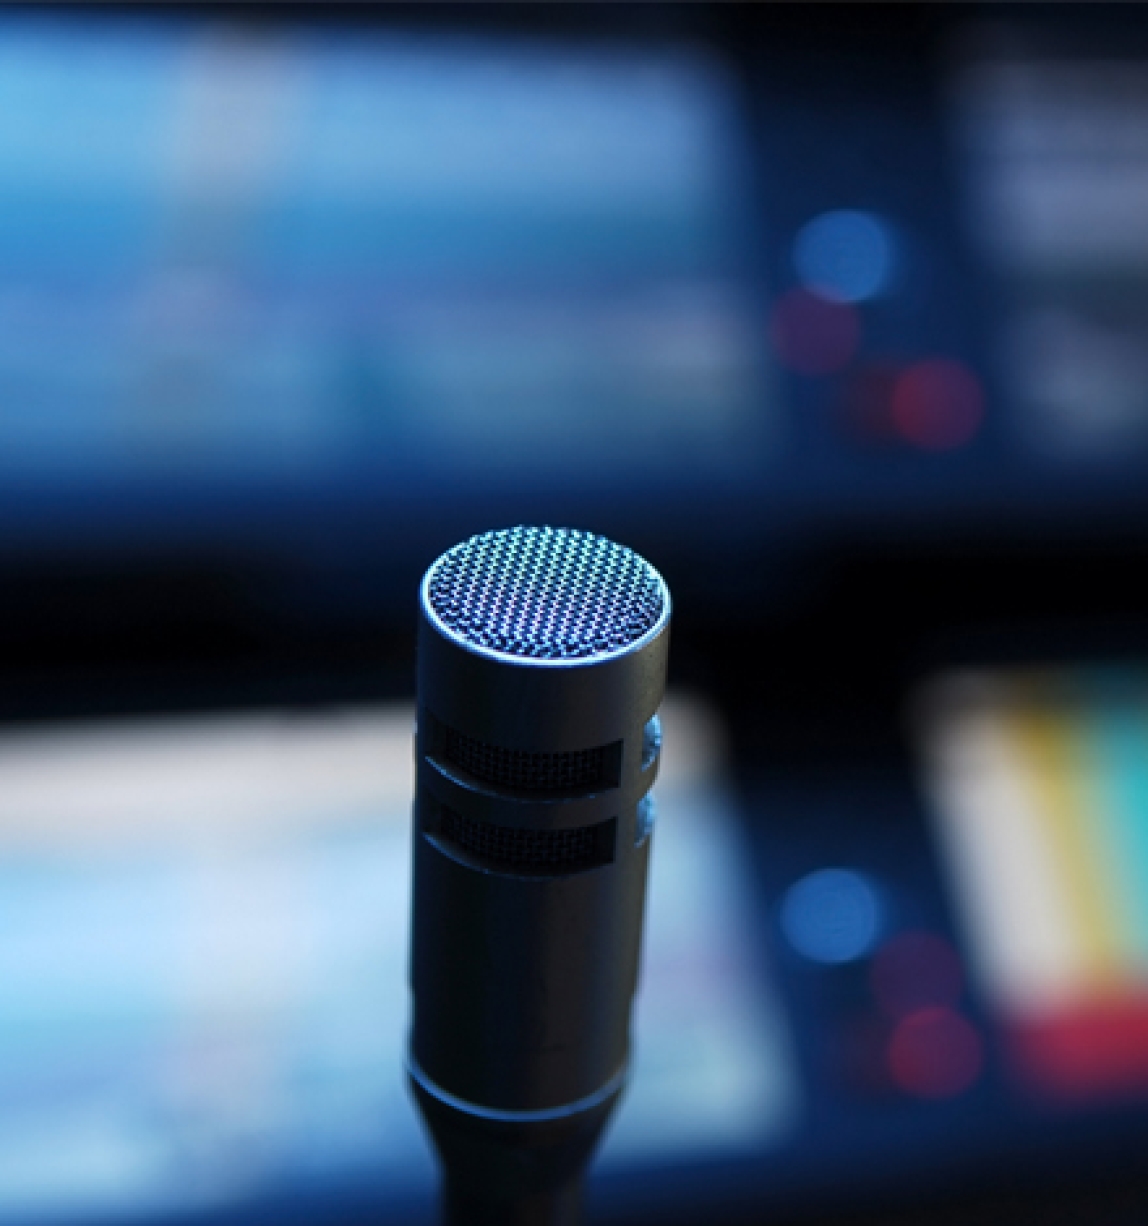 Microphone close-up in studio 